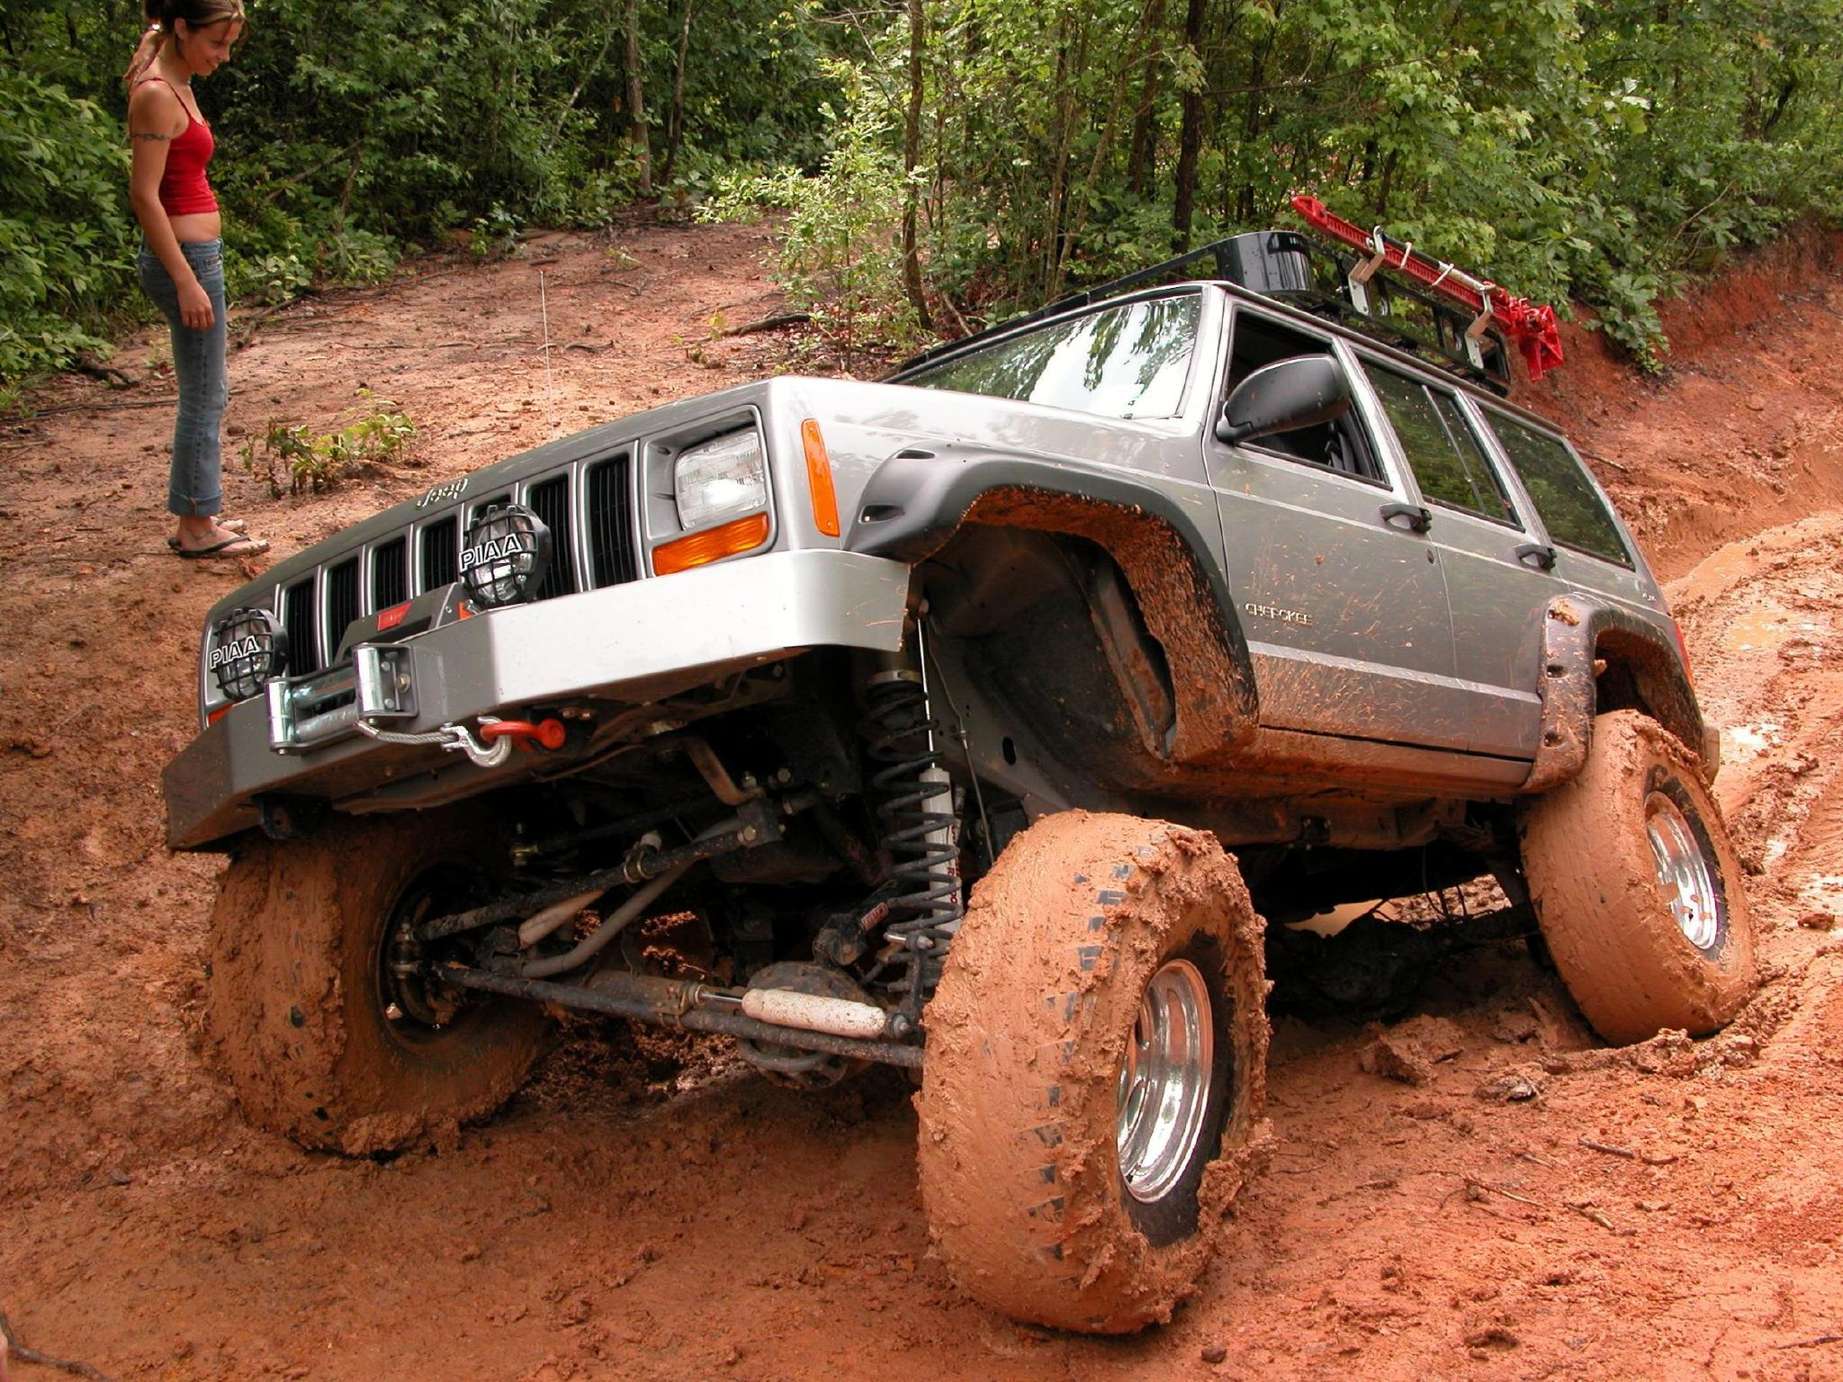 Jeep_Cherokee